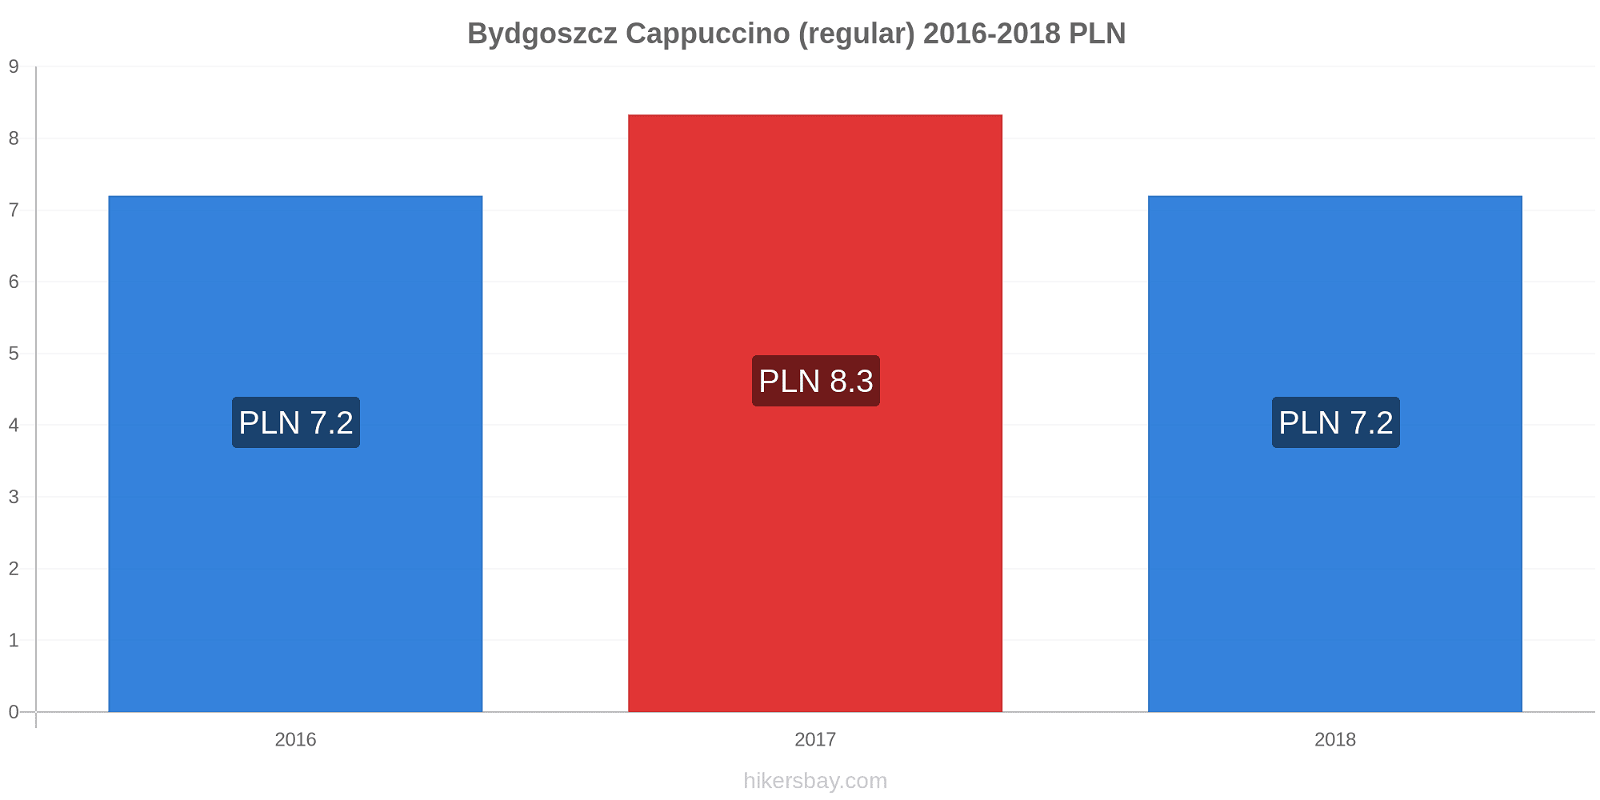 Bydgoszcz variação de preço Capuccino (regular) hikersbay.com